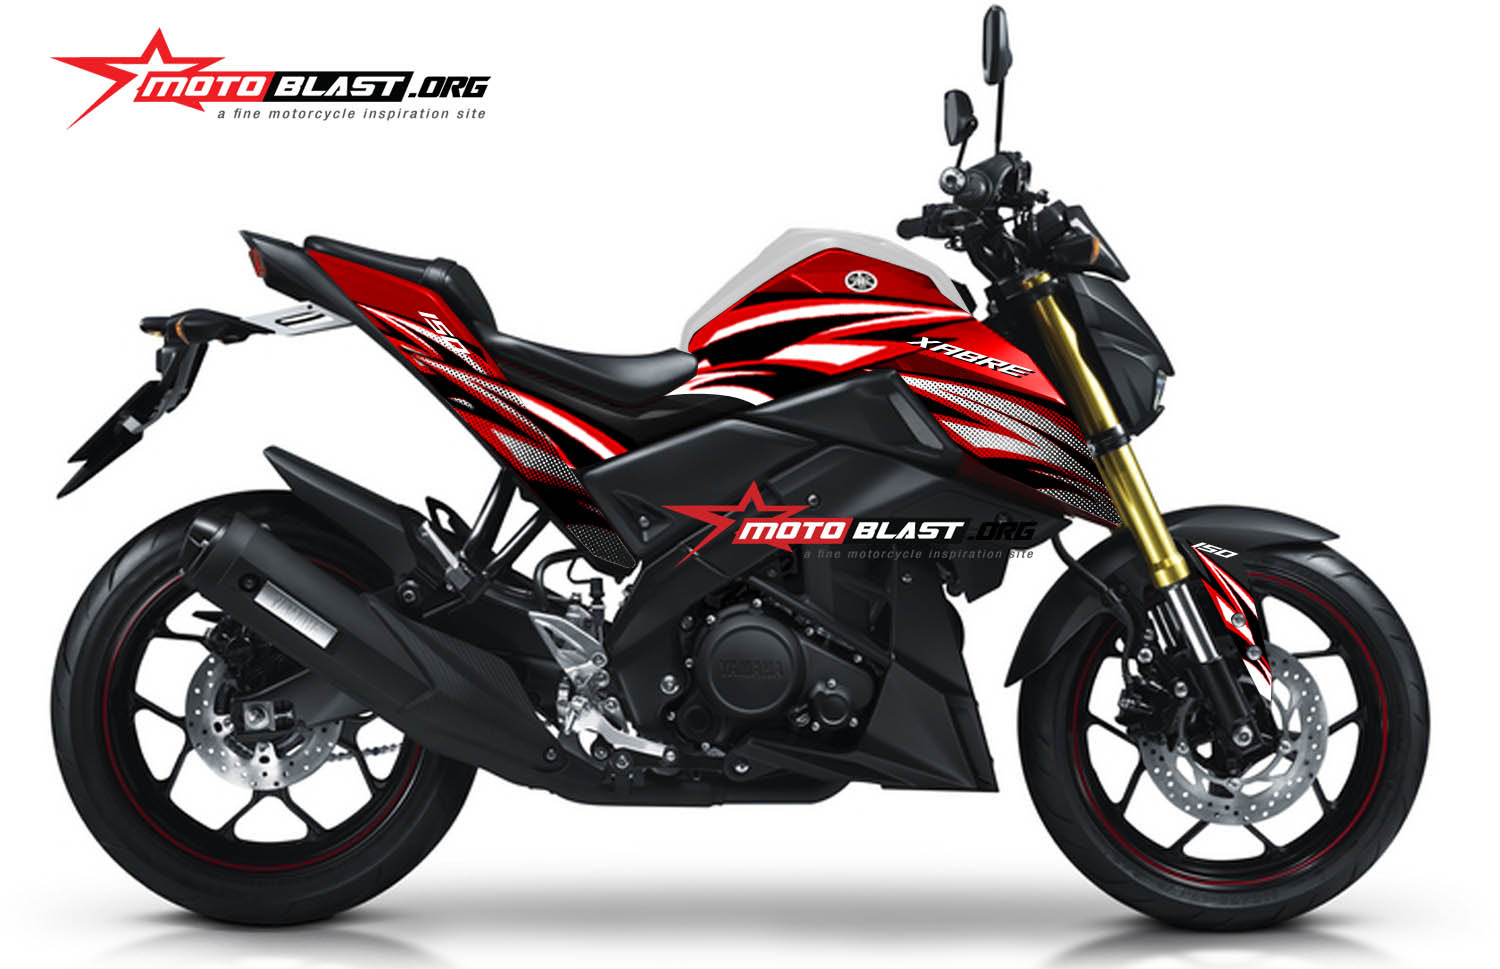 66 Modifikasi Motor Yamaha Xabre Full Fairing Terbaru Gedheg Motor